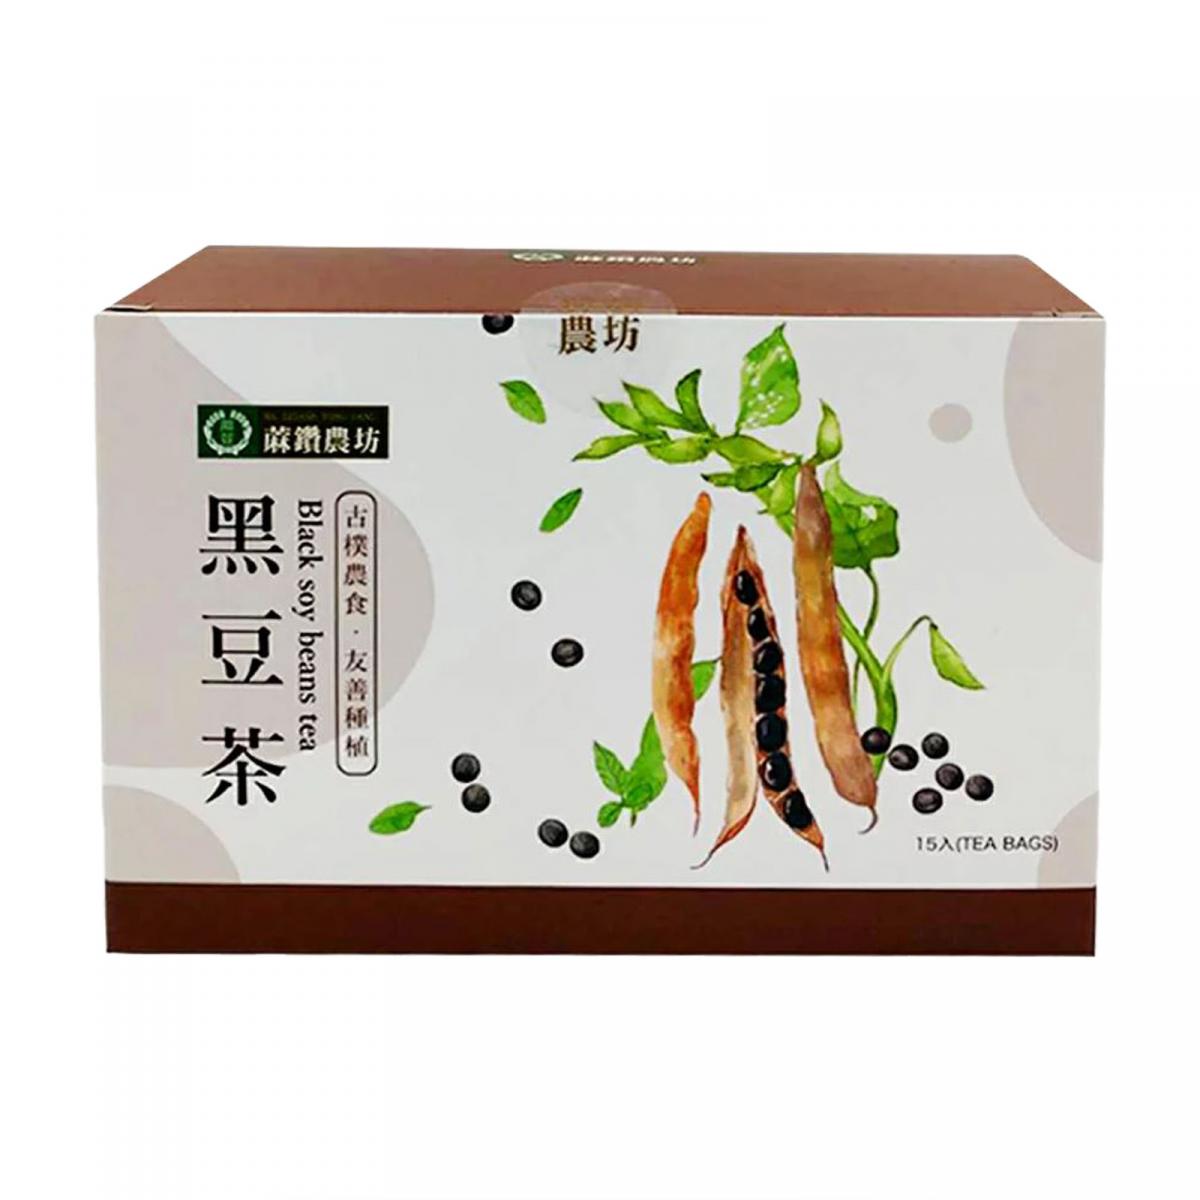 黑豆茶 (15入)